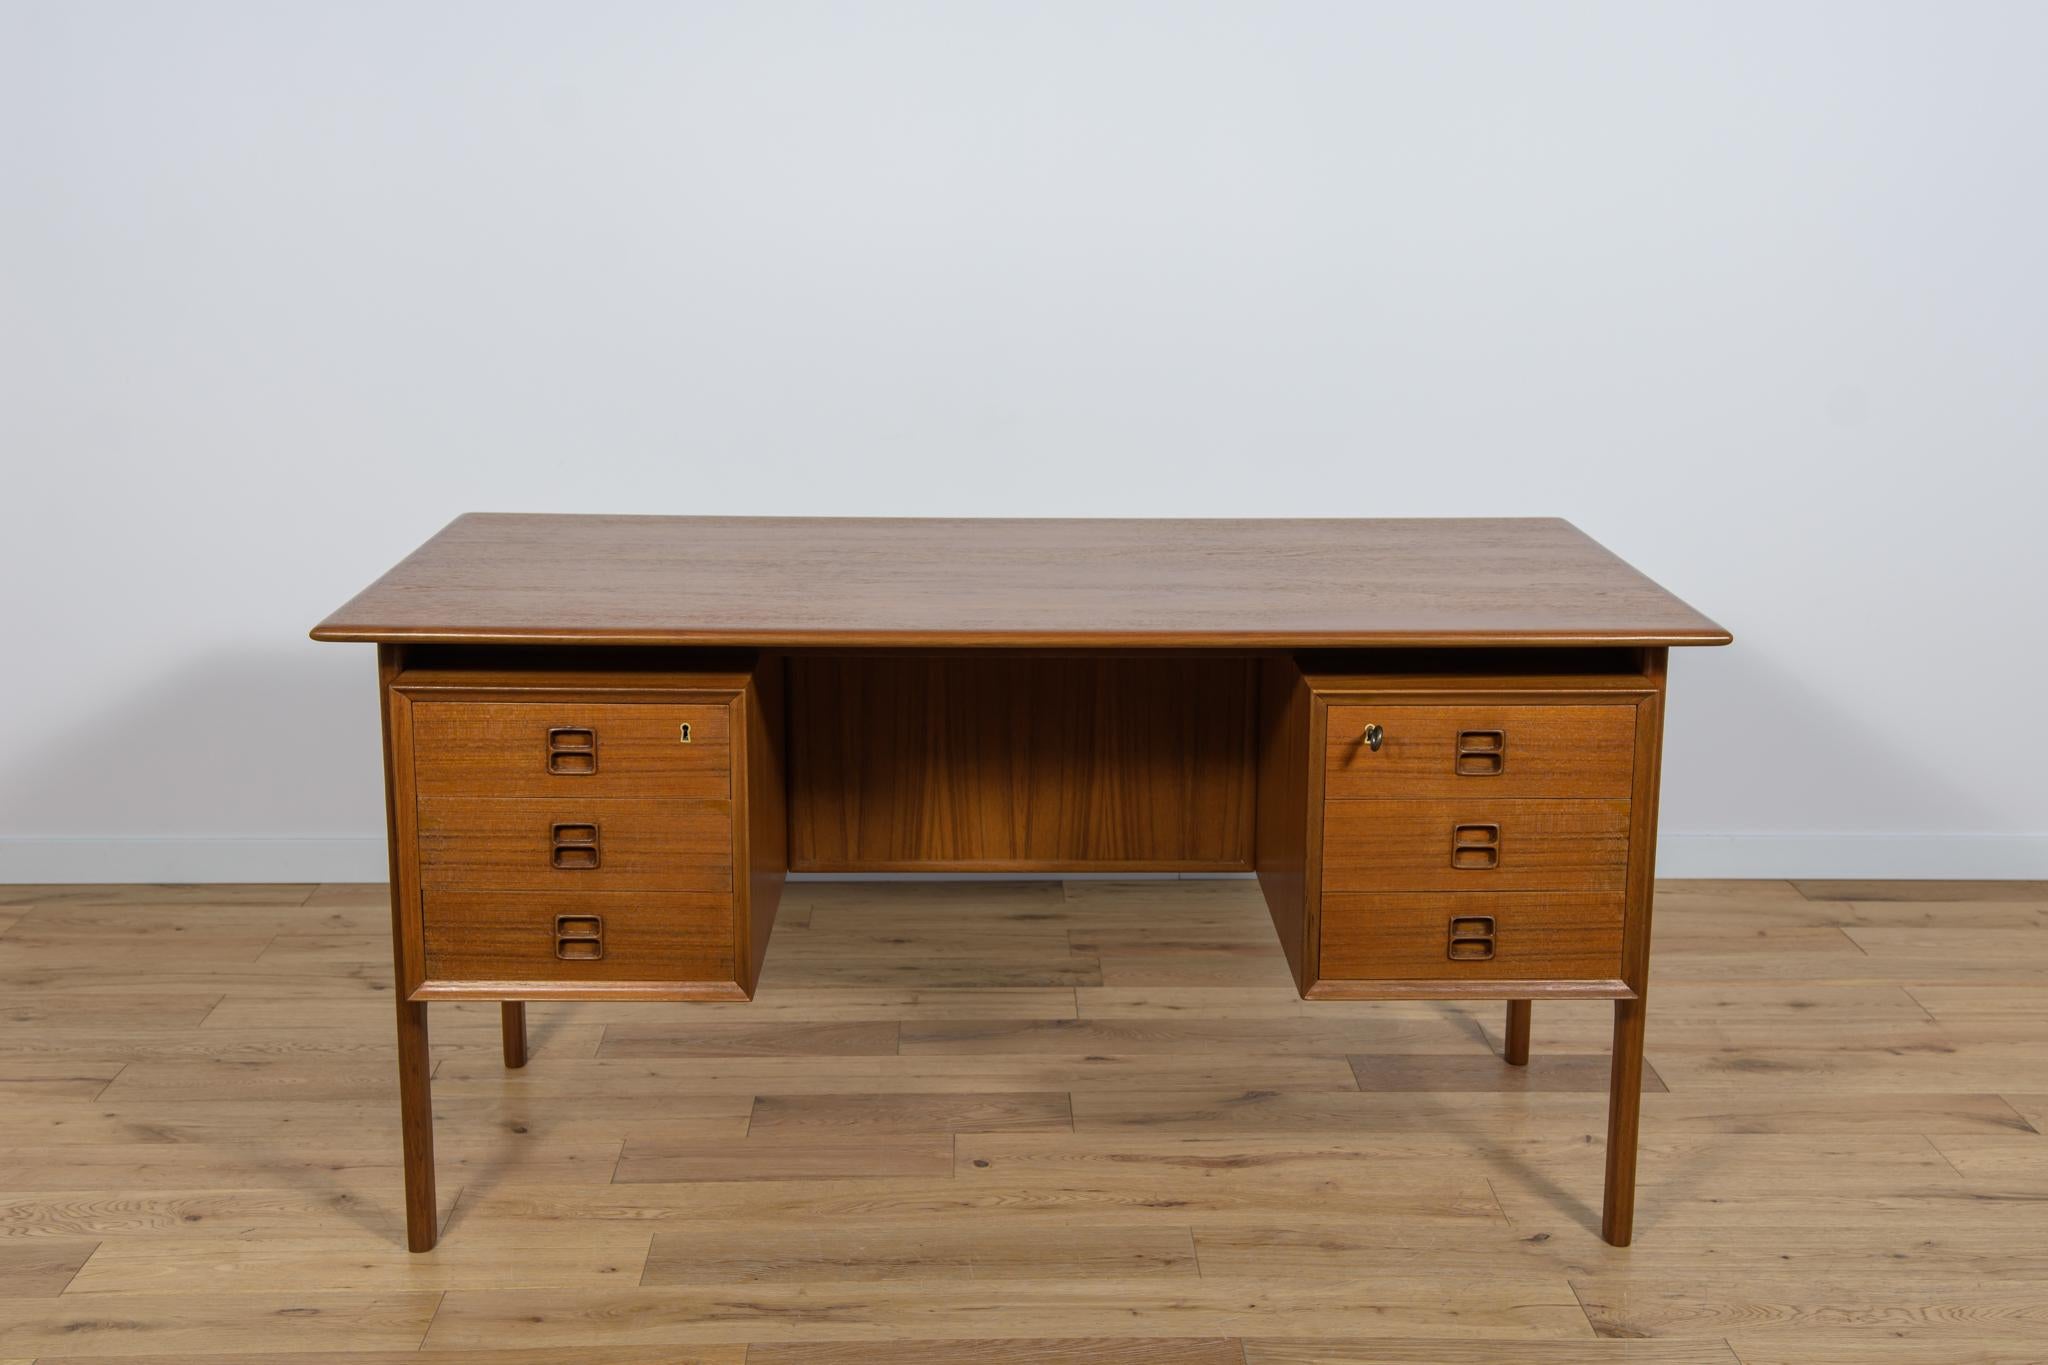 Dieser Schreibtisch wurde von Arne Vodder entworfen und von Sibast in Dänemark in den 1960er Jahren hergestellt. Er ist ein gutes Beispiel für hochwertige MATERIALIEN und Verarbeitung. Dieser Schreibtisch ist aus Teakholz gefertigt und dank der